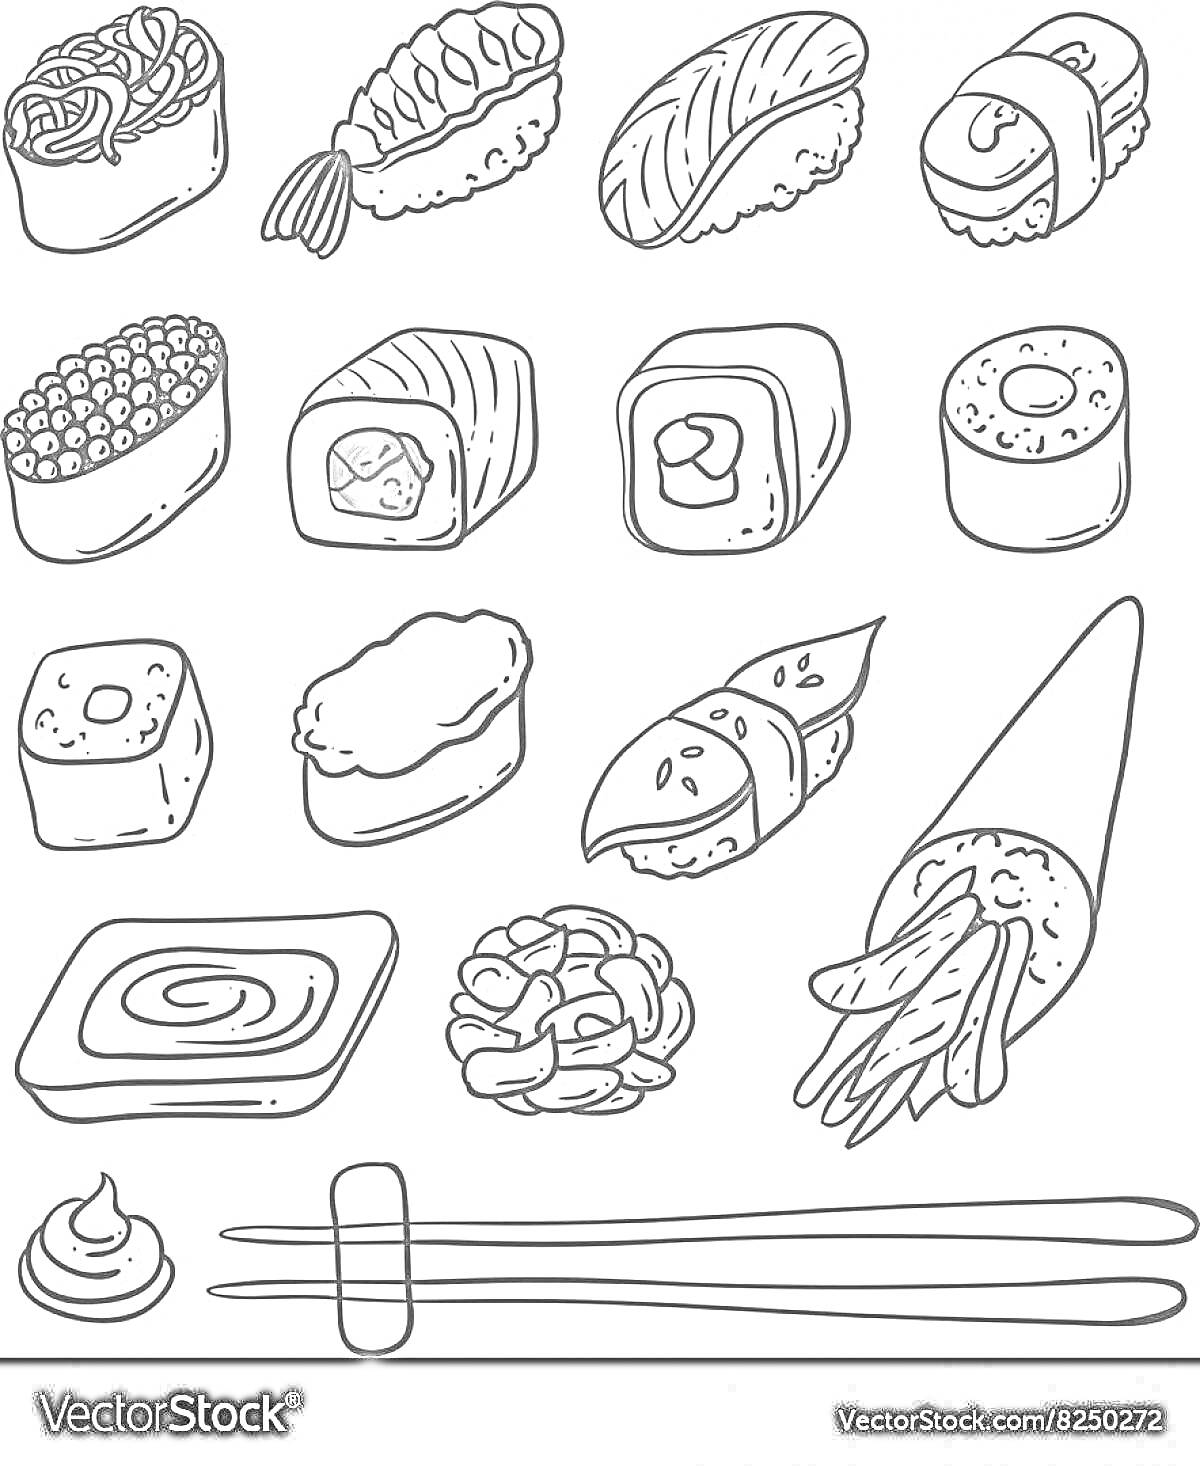 Набор различных видов суши с роллами, нигири, гунканами, сашими, васаби, палочками для еды и деревянной подставкой